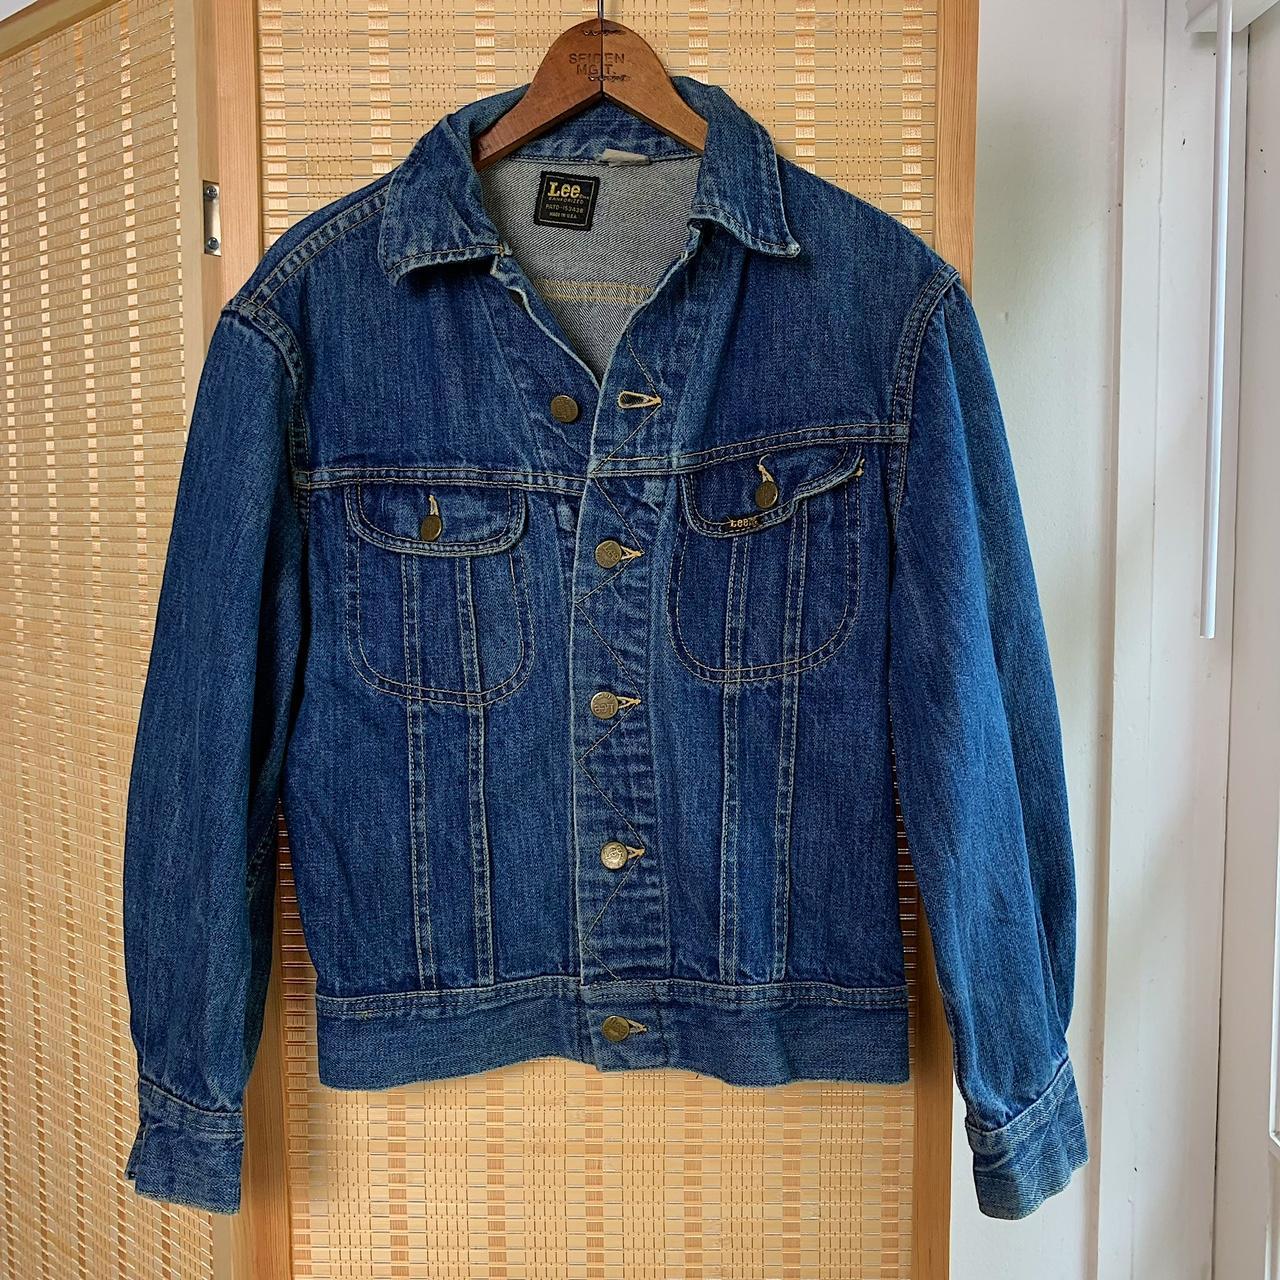 Vintage 80s lee denim jacket Size mens extra small... - Depop